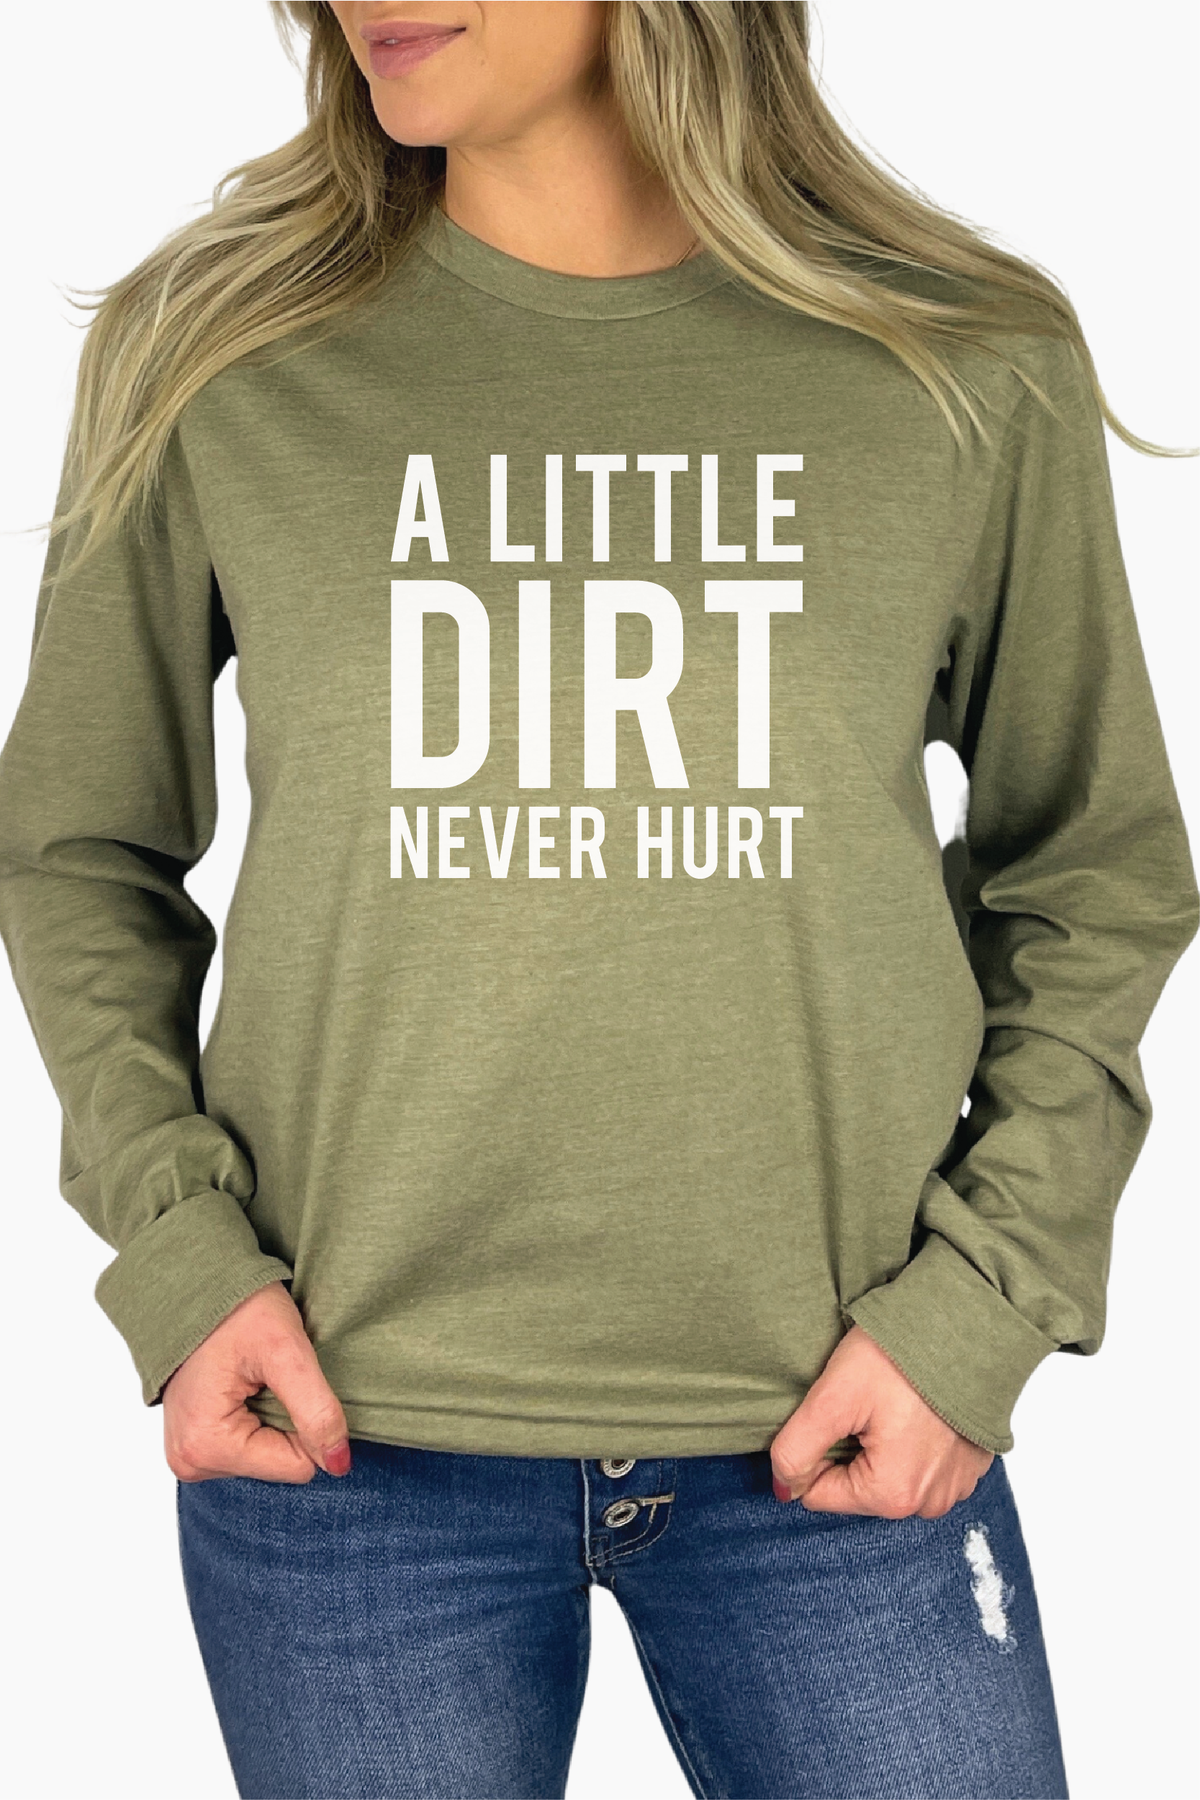 Dirt Never Hurt Long Sleeve Shirt